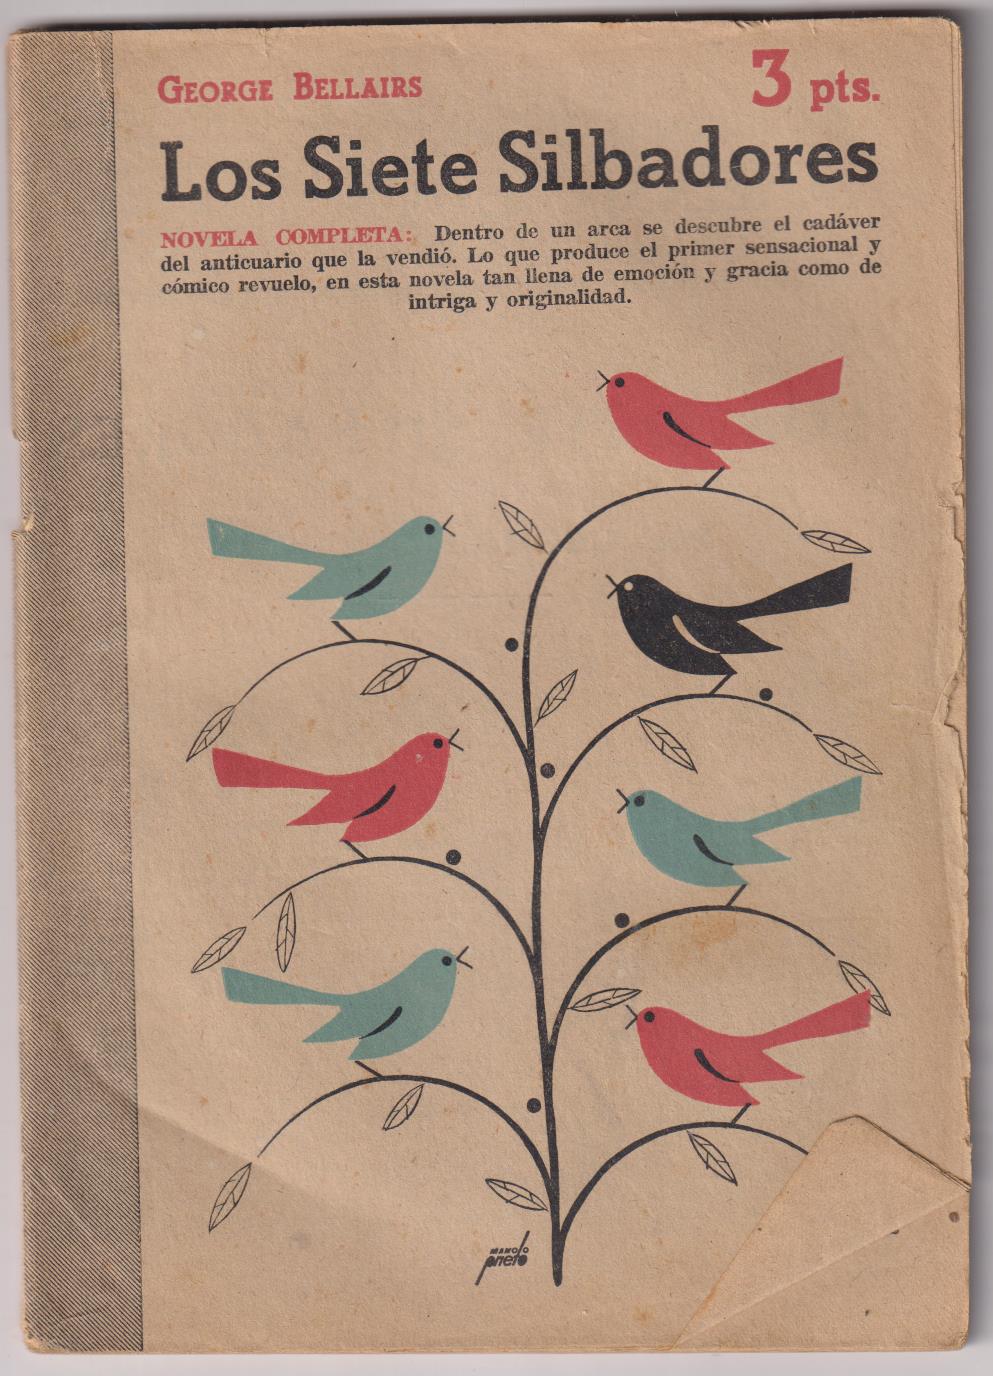 Revista Literaria Novelas y Cuentos nº 1020. Los siete Silbadores por George Bellair, año 1950